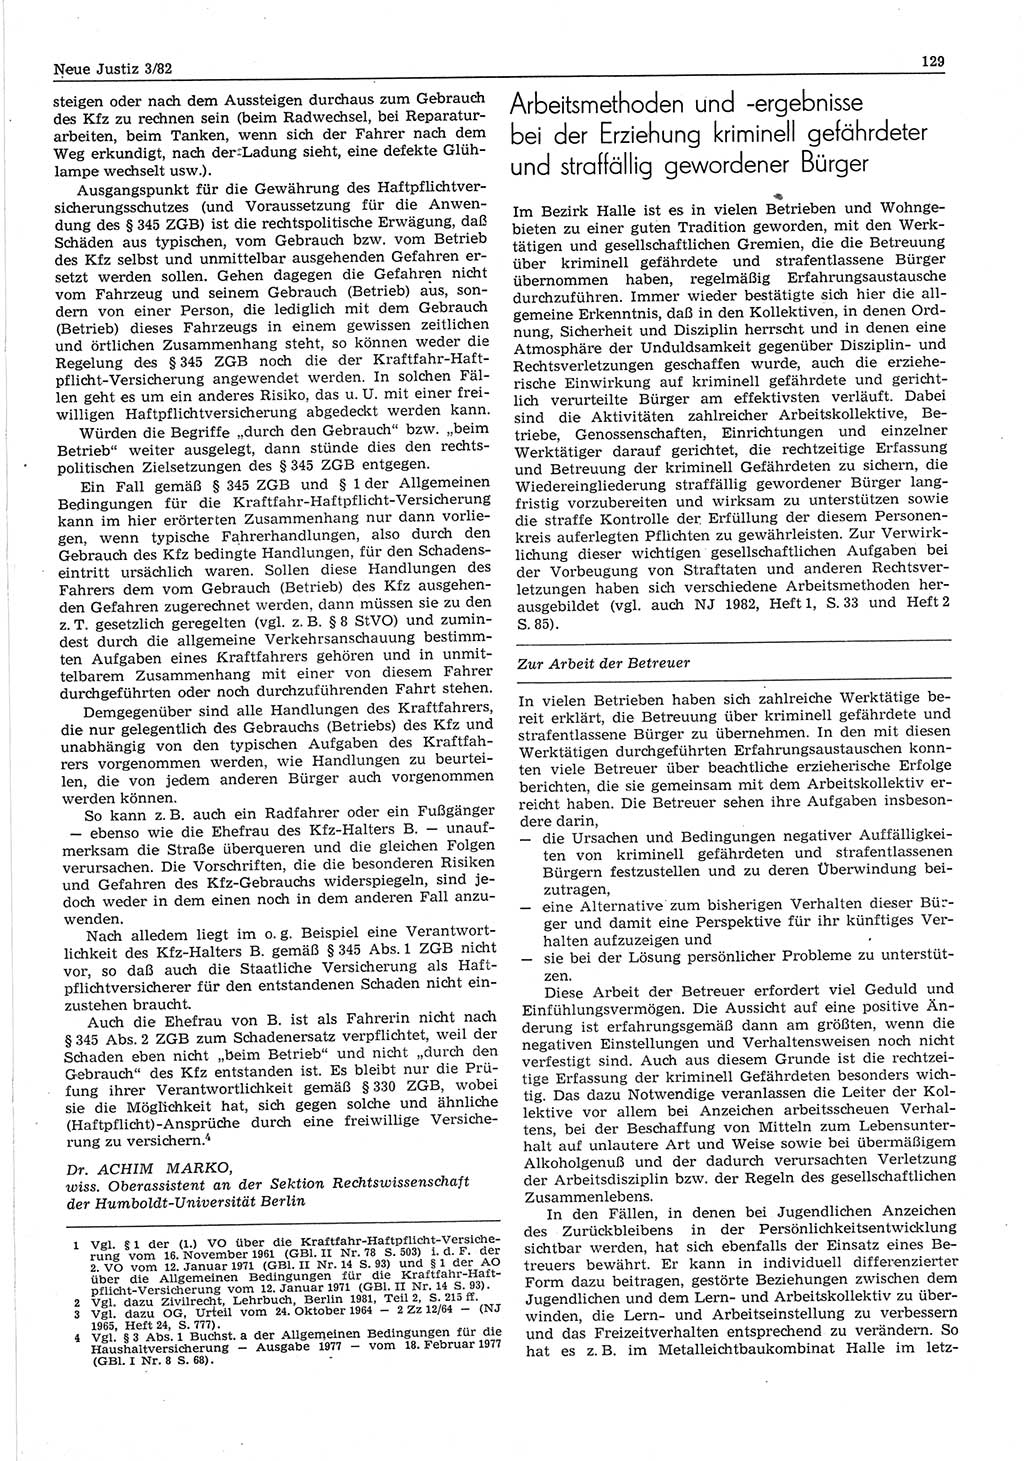 Neue Justiz (NJ), Zeitschrift für sozialistisches Recht und Gesetzlichkeit [Deutsche Demokratische Republik (DDR)], 36. Jahrgang 1982, Seite 129 (NJ DDR 1982, S. 129)